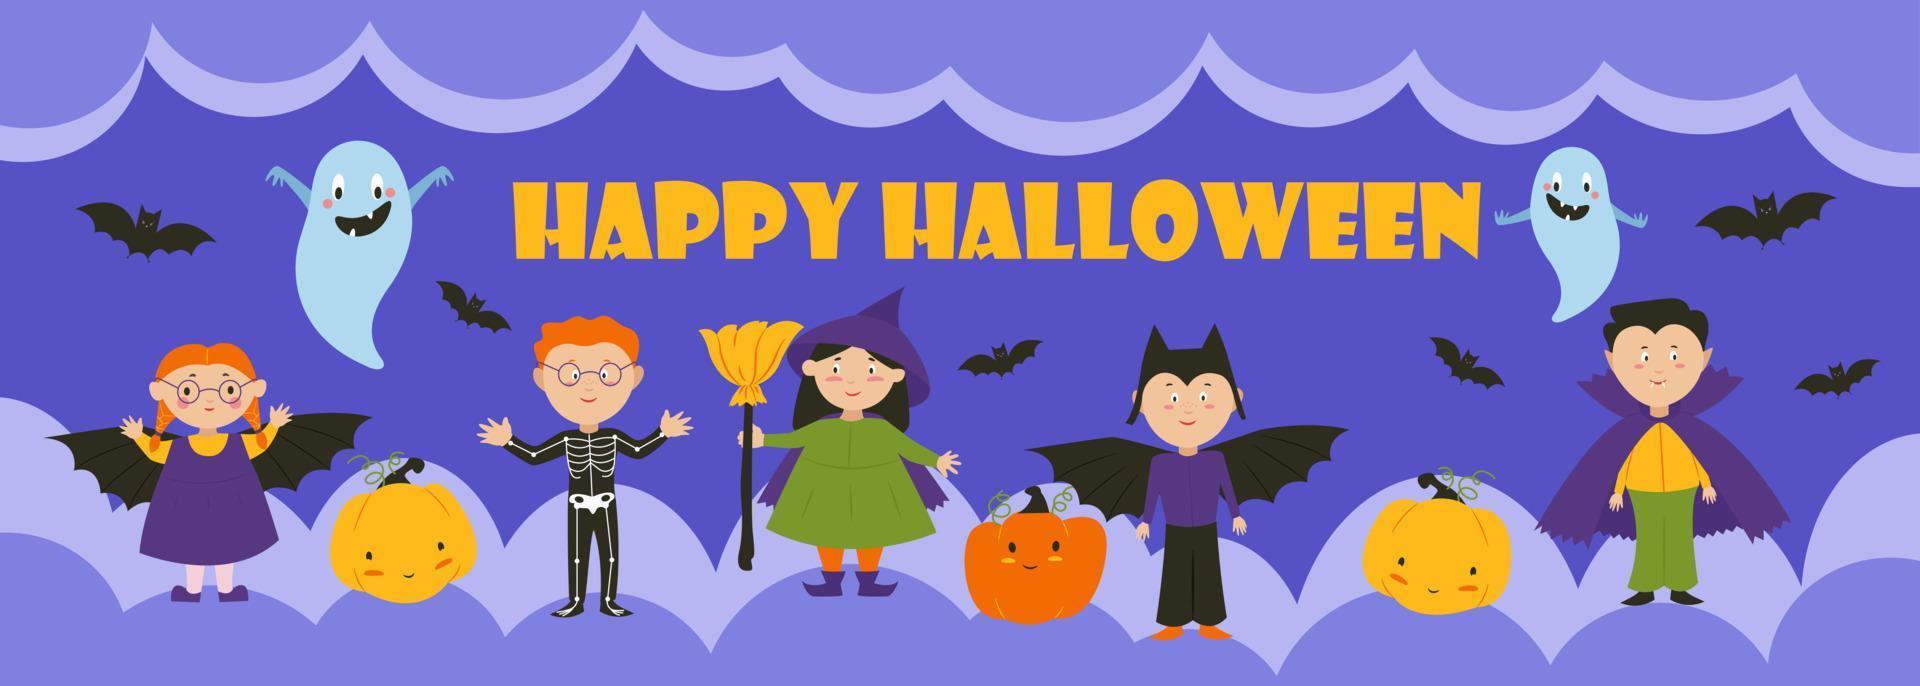 niños disfrazados de brujas, vampiros, muerte, fantasmas, calabazas y murciélagos, pancarta de fiesta de halloween. ilustración vectorial vector